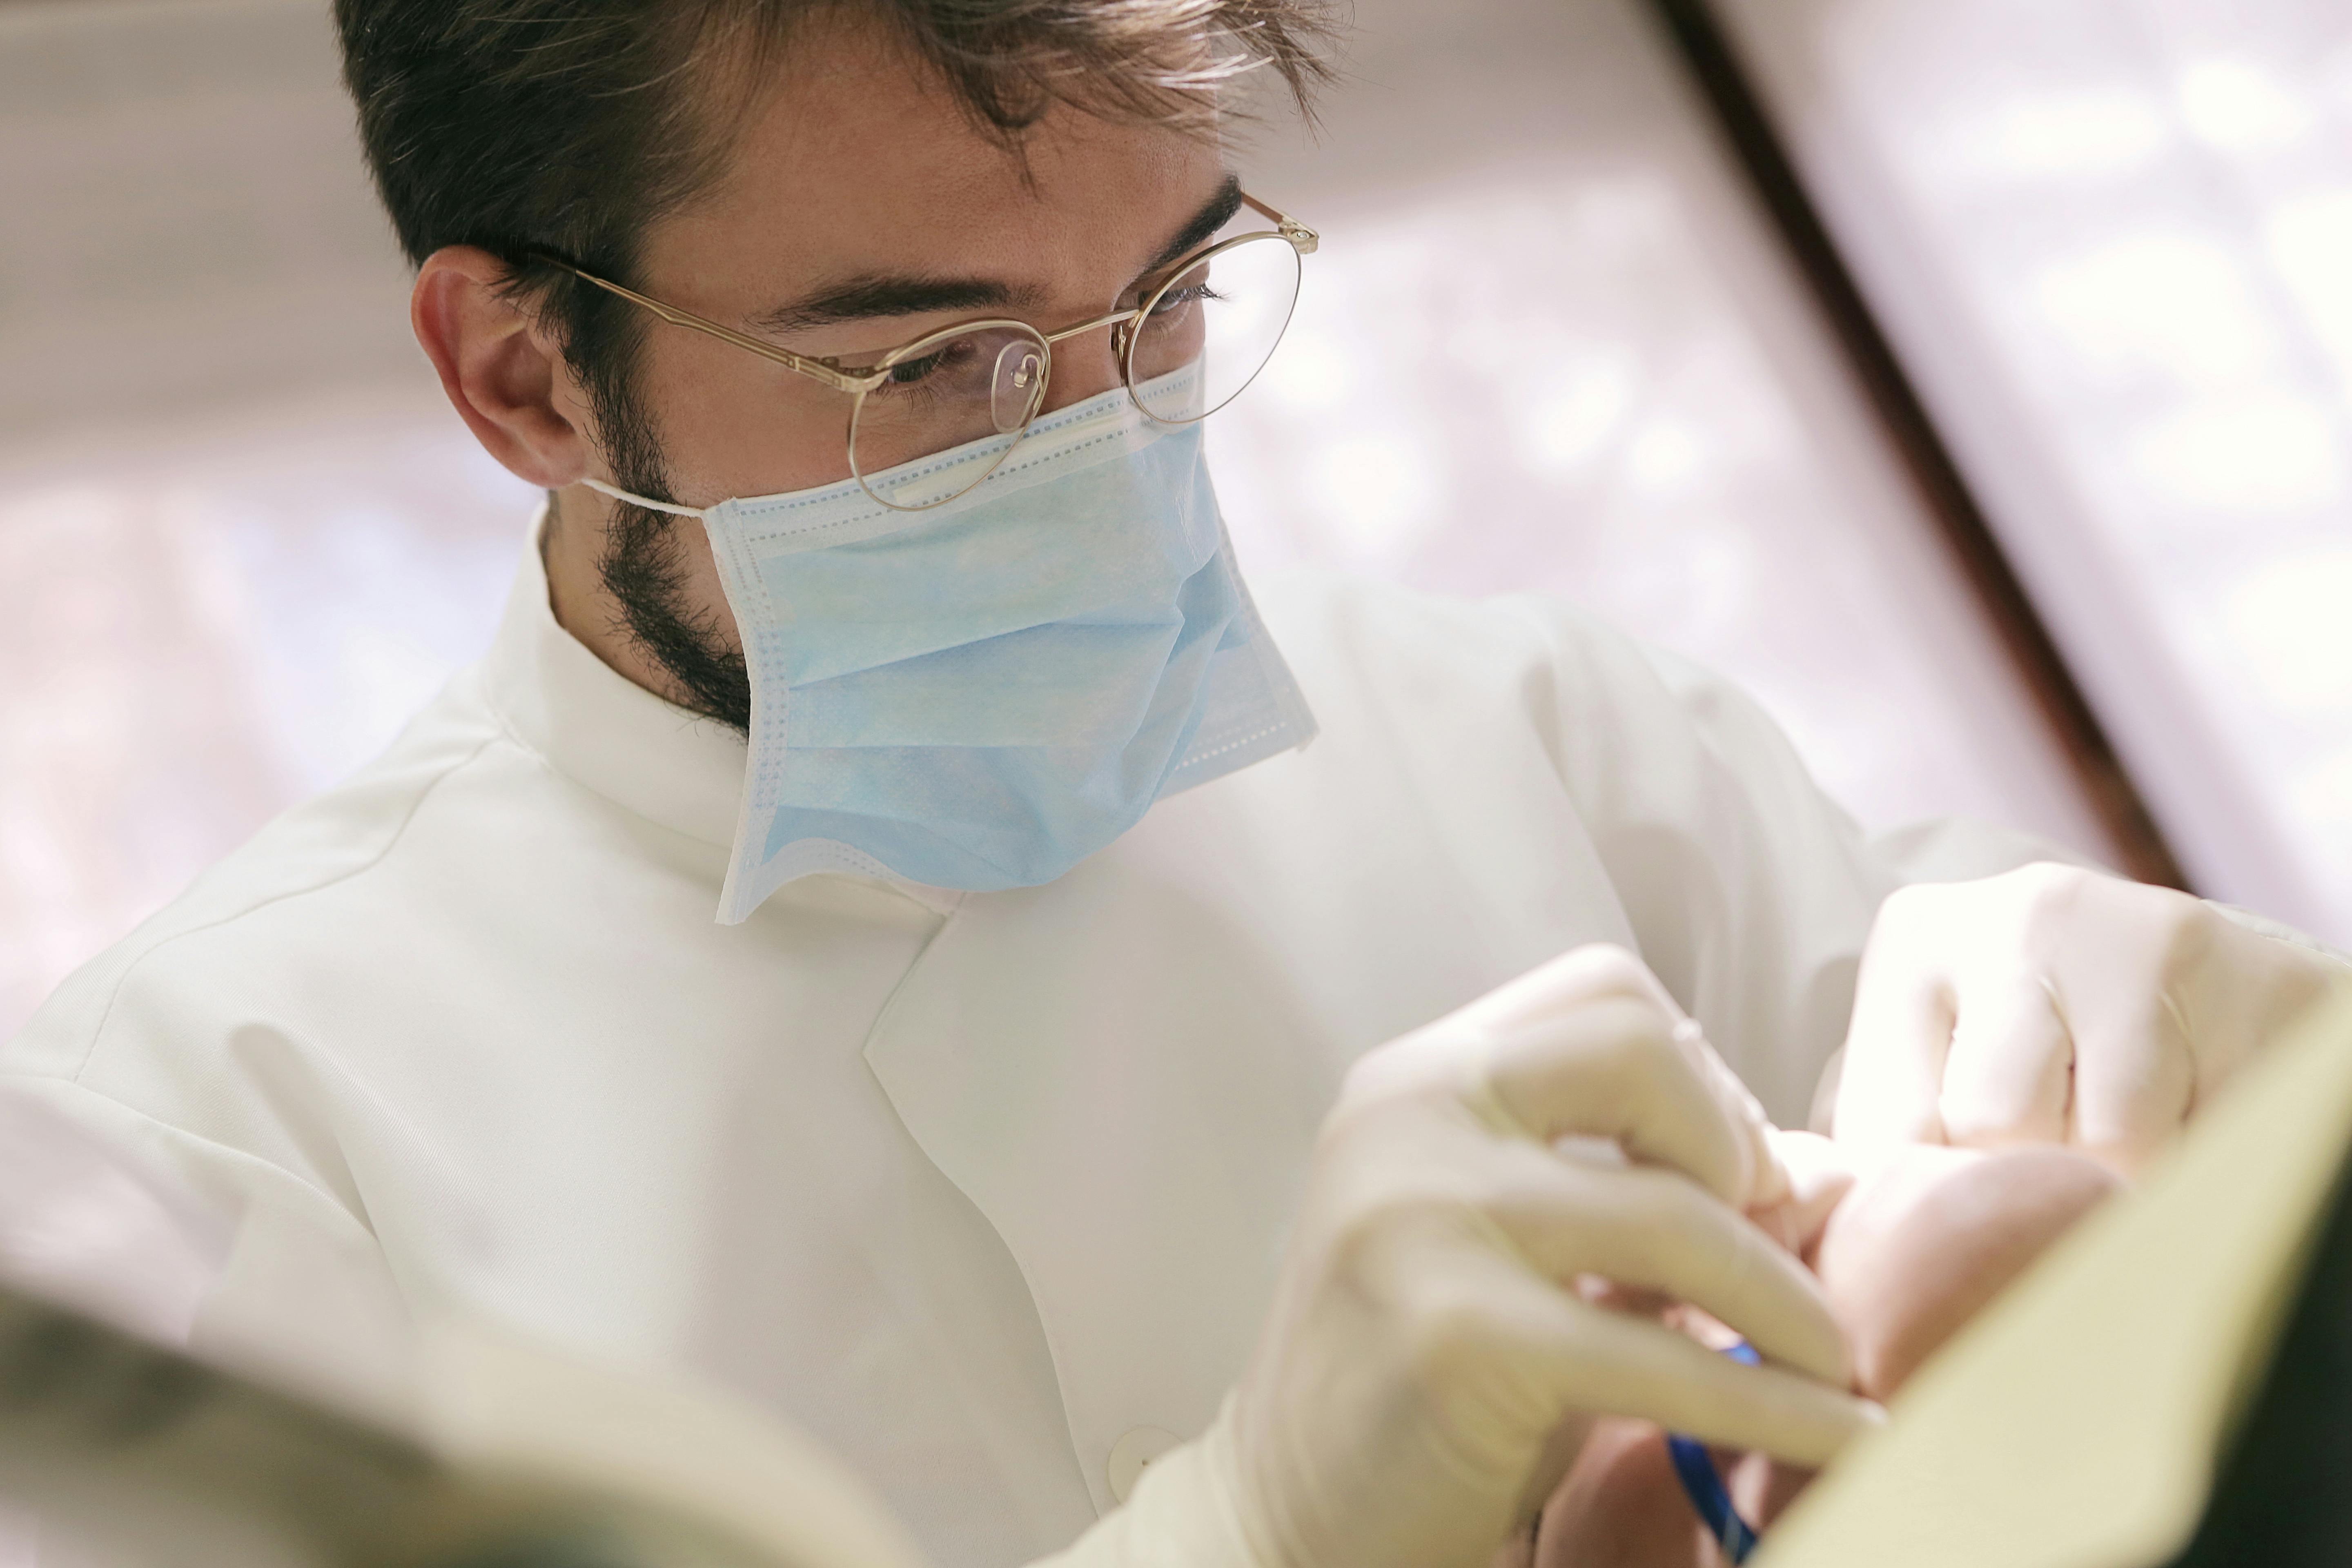 Zahnarzt, der die Zähne des Patienten reinigt. | Quelle: Pexels